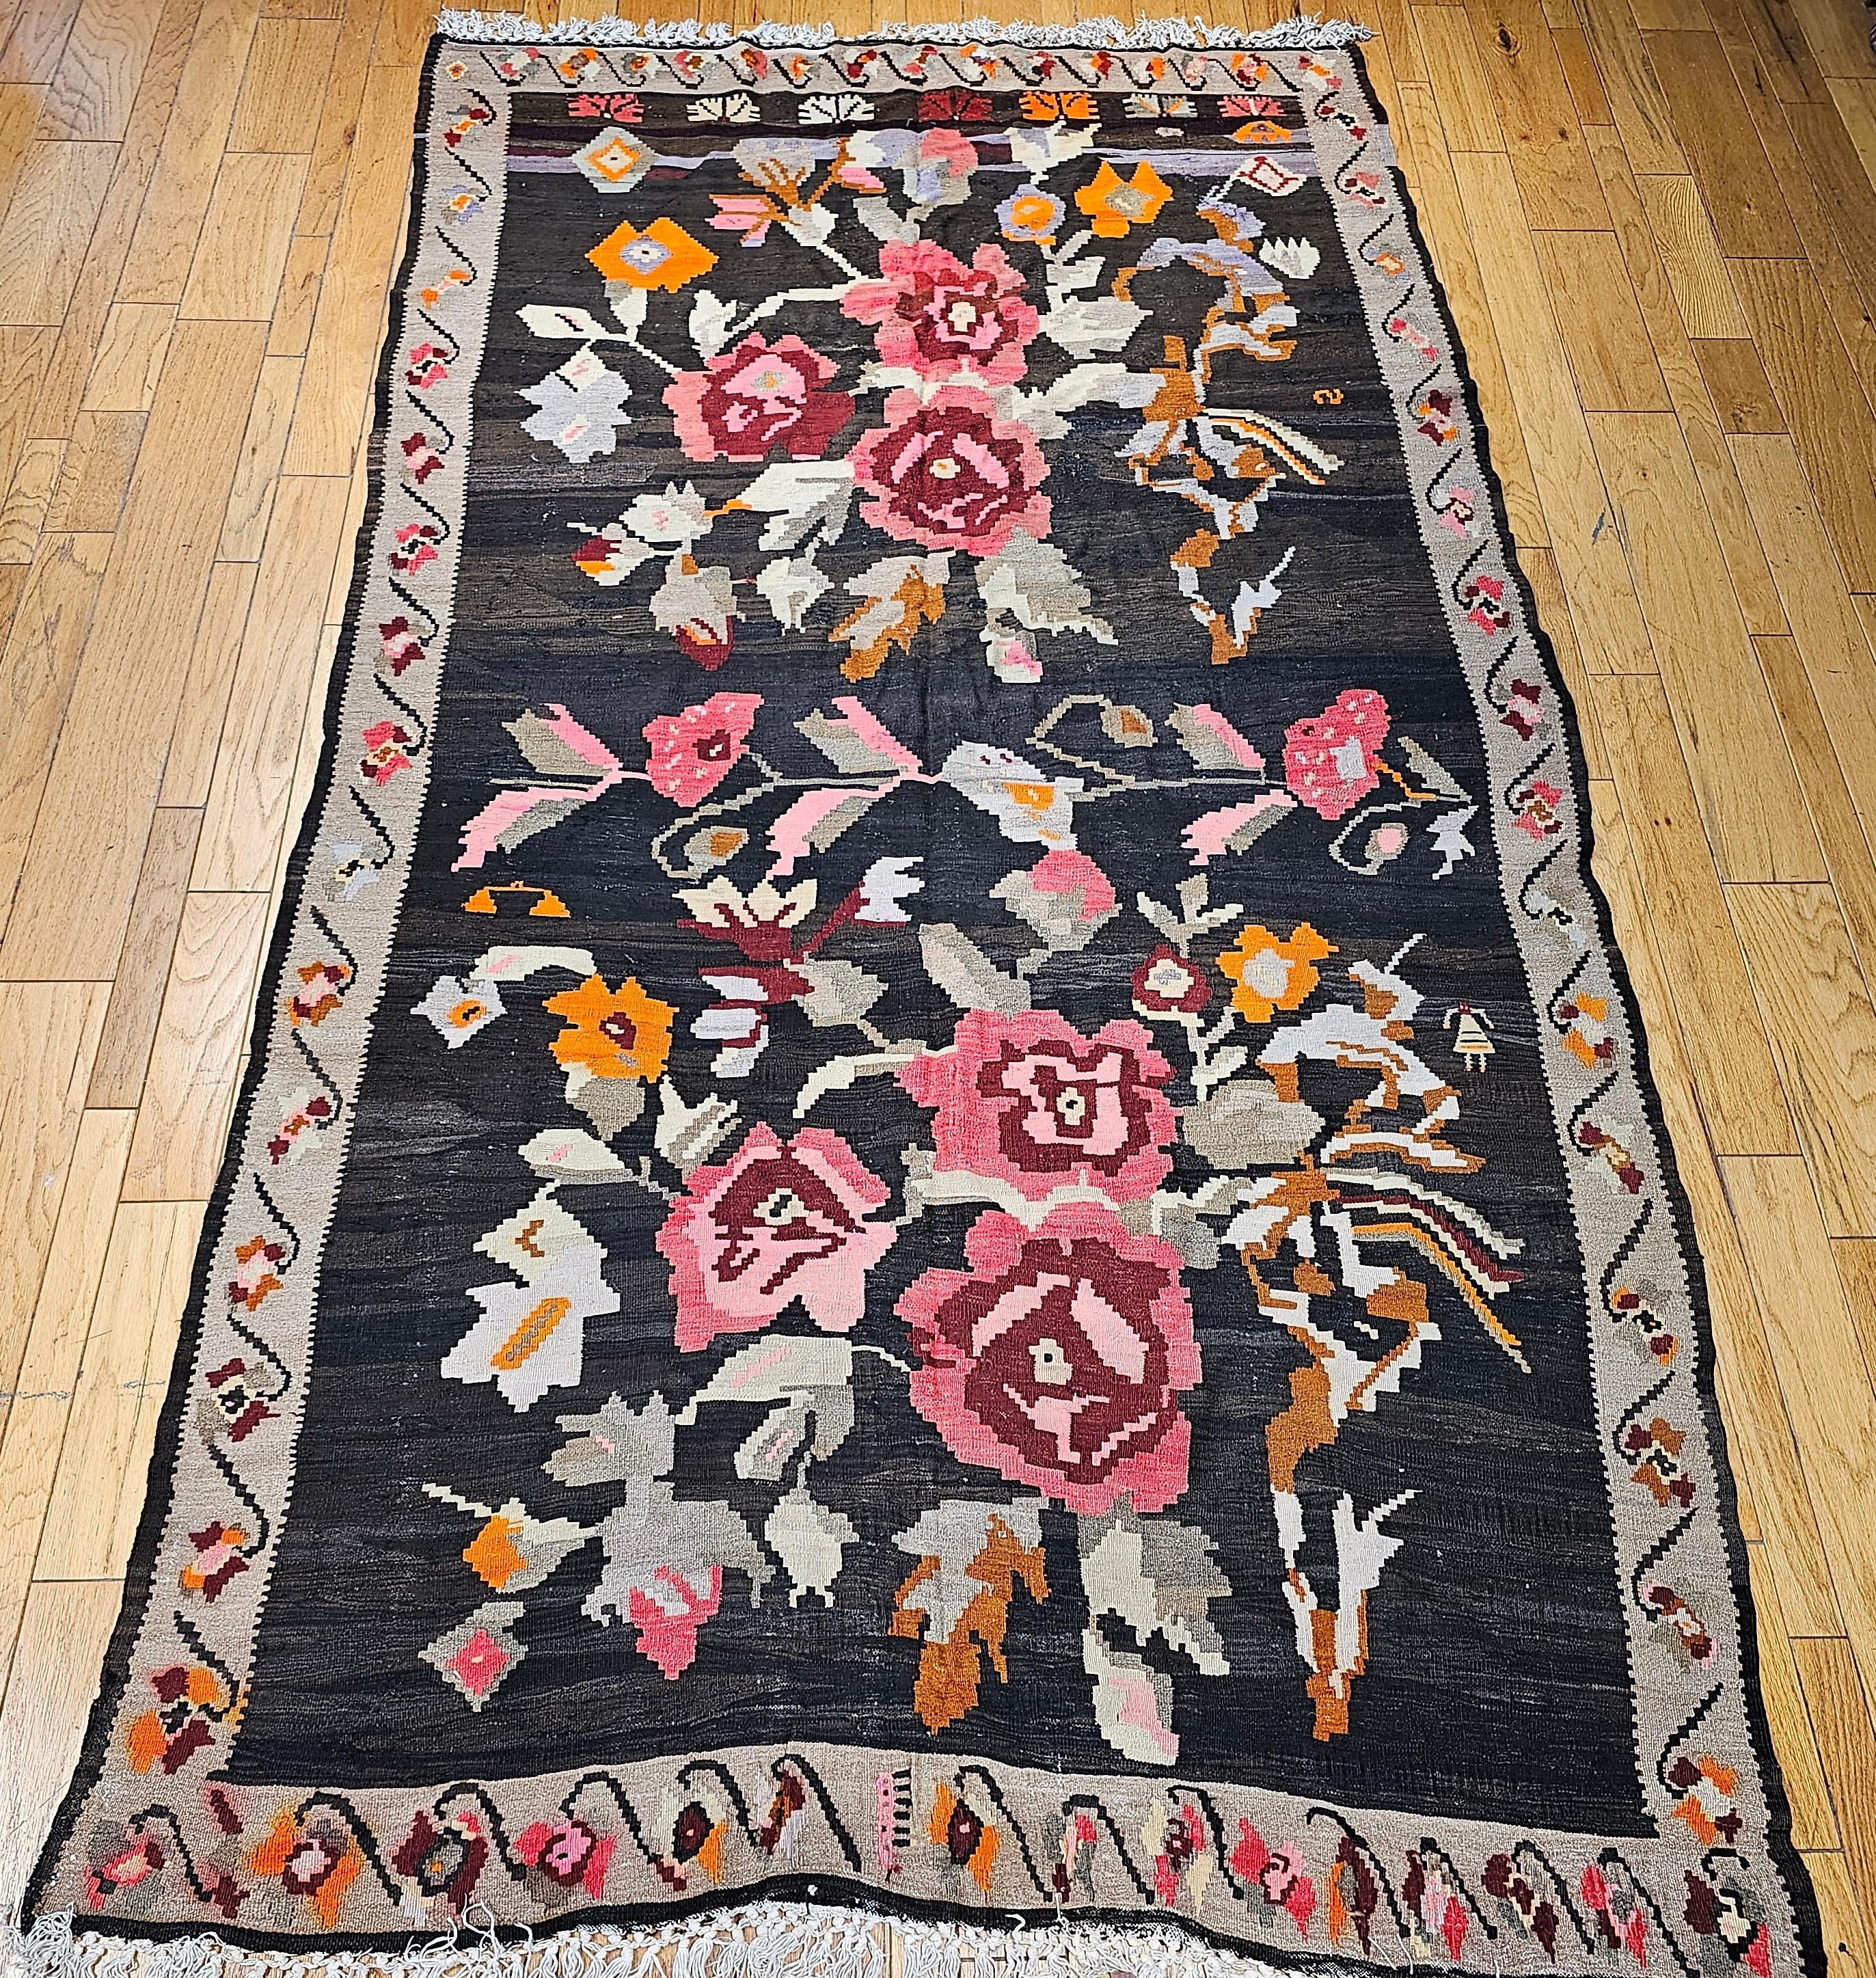 Tapis vintage Karabagh Kilim pour galerie ou pour une pièce, avec un grand motif floral et des couleurs vibrantes, datant du début des années 1900.   Le kilim a des couleurs vives et magnifiques utilisées dans les deux bouquets floraux qui couvrent